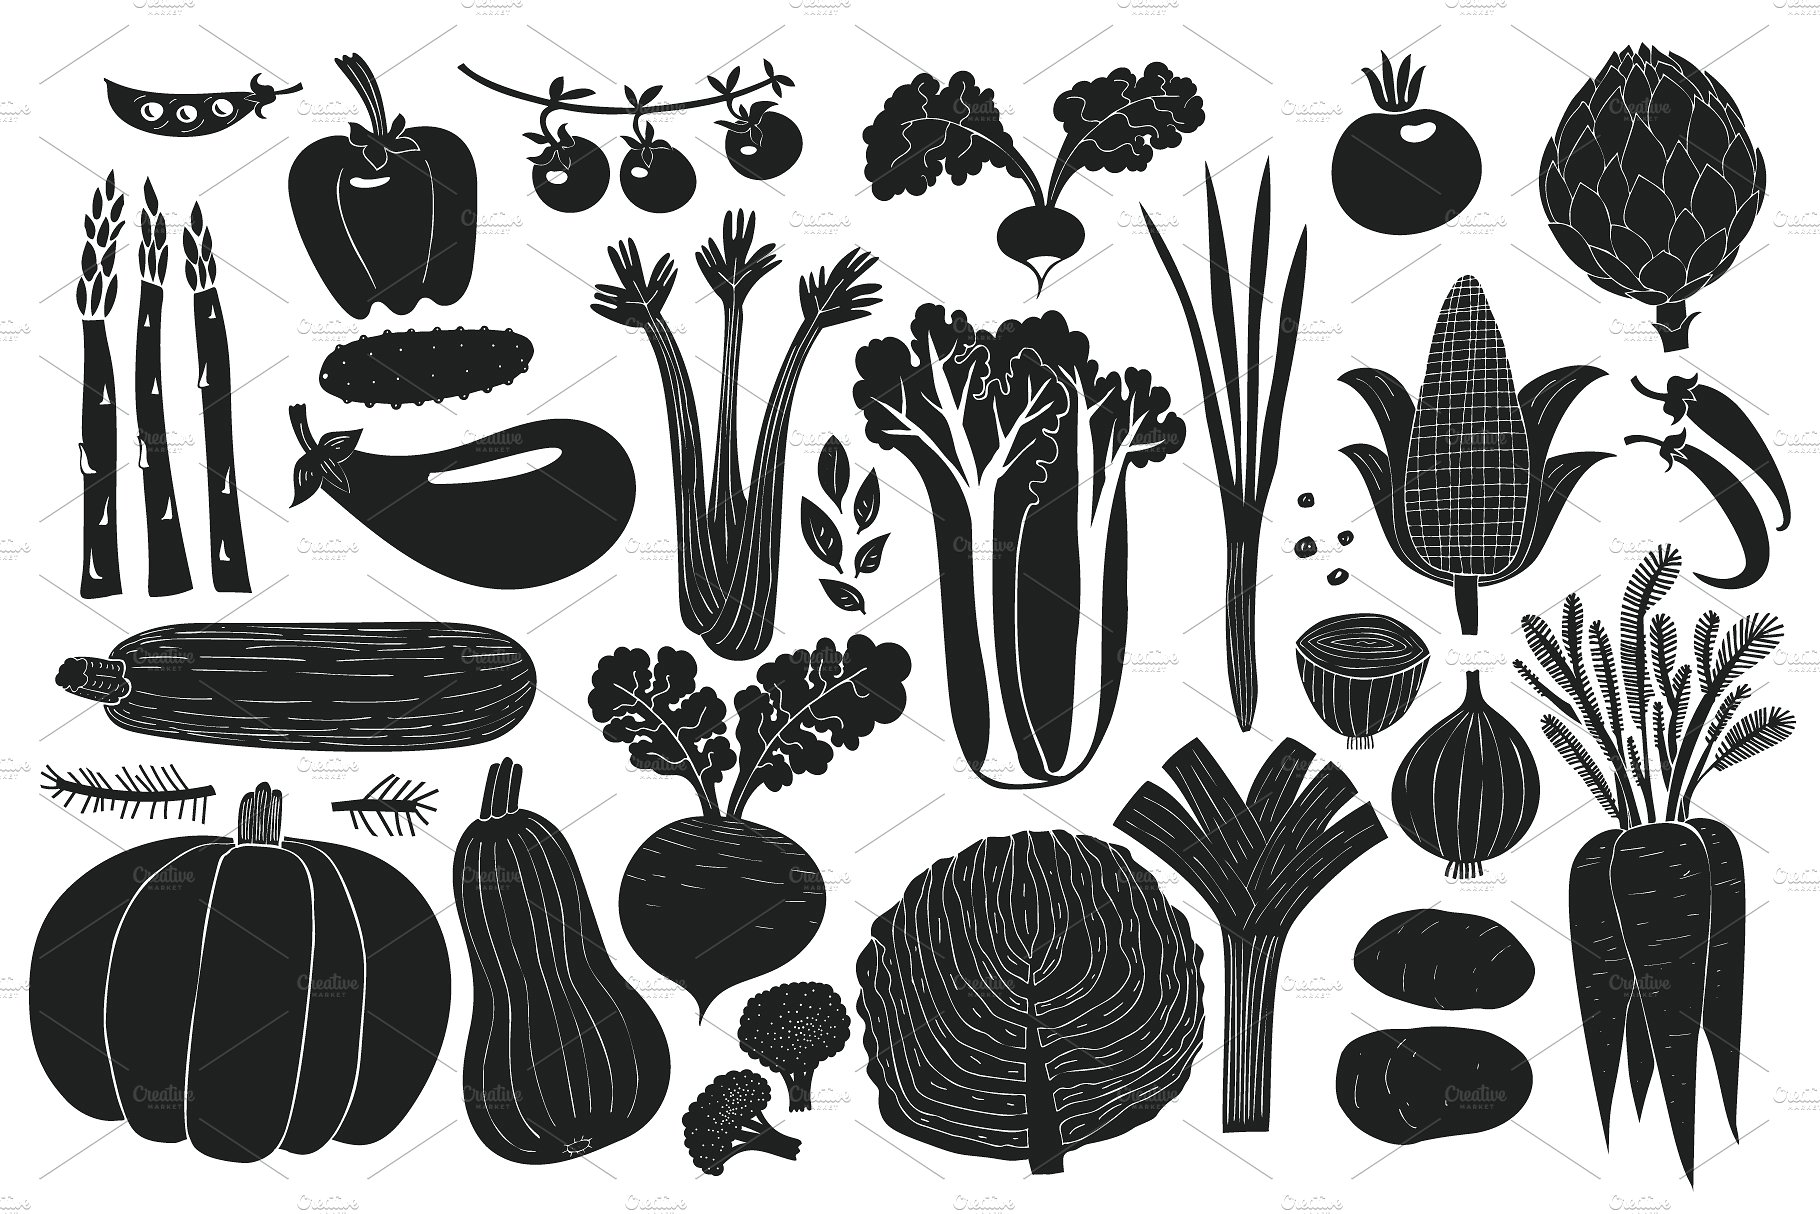 手绘蔬菜插画素材合集包 Vegetables Vector